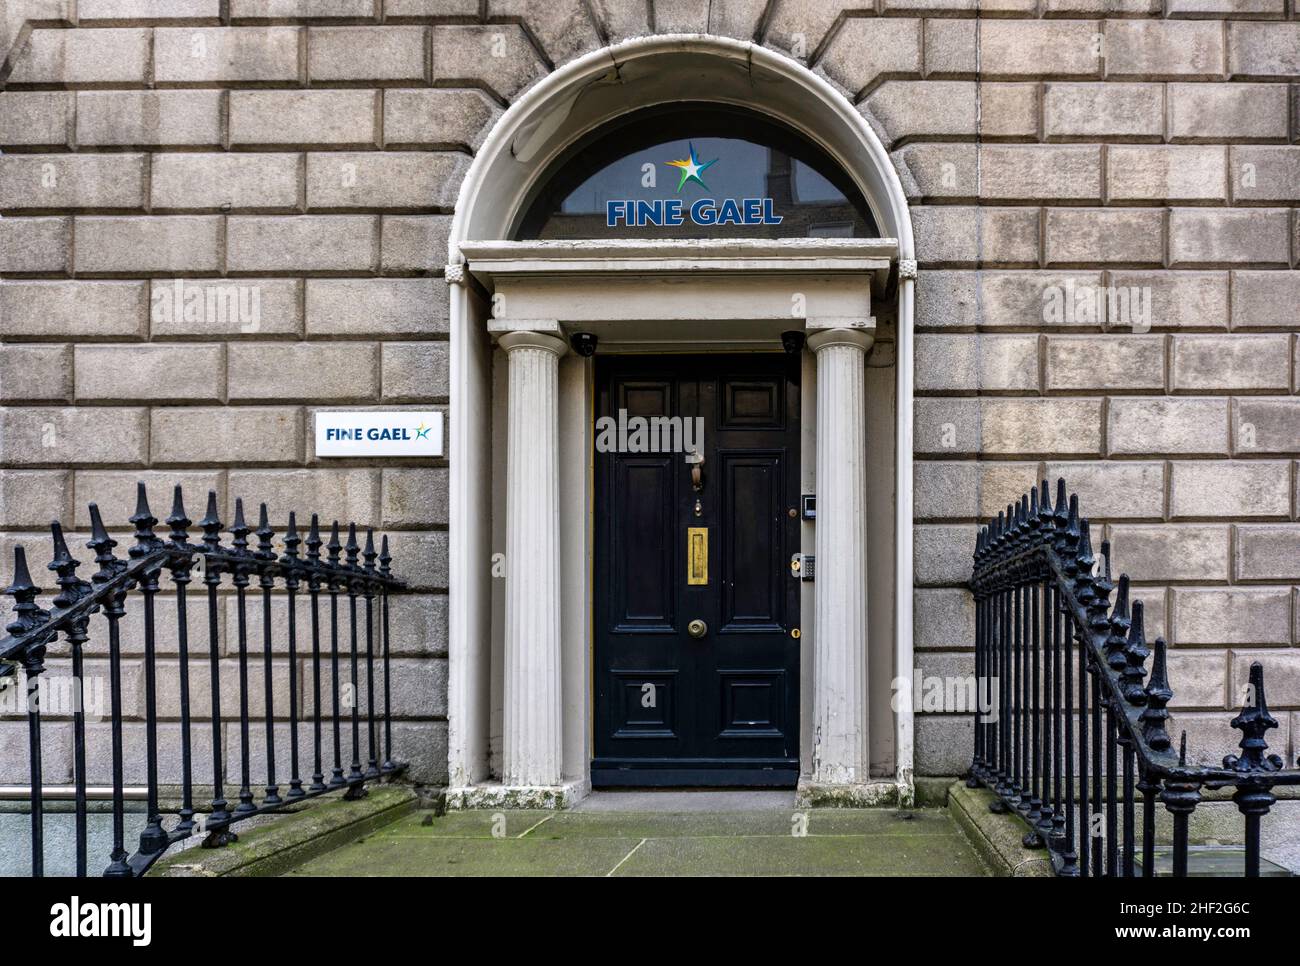 Siège national du parti politique irlandais, Fine Gael, à Mount Street, Dublin, Irlande. Banque D'Images